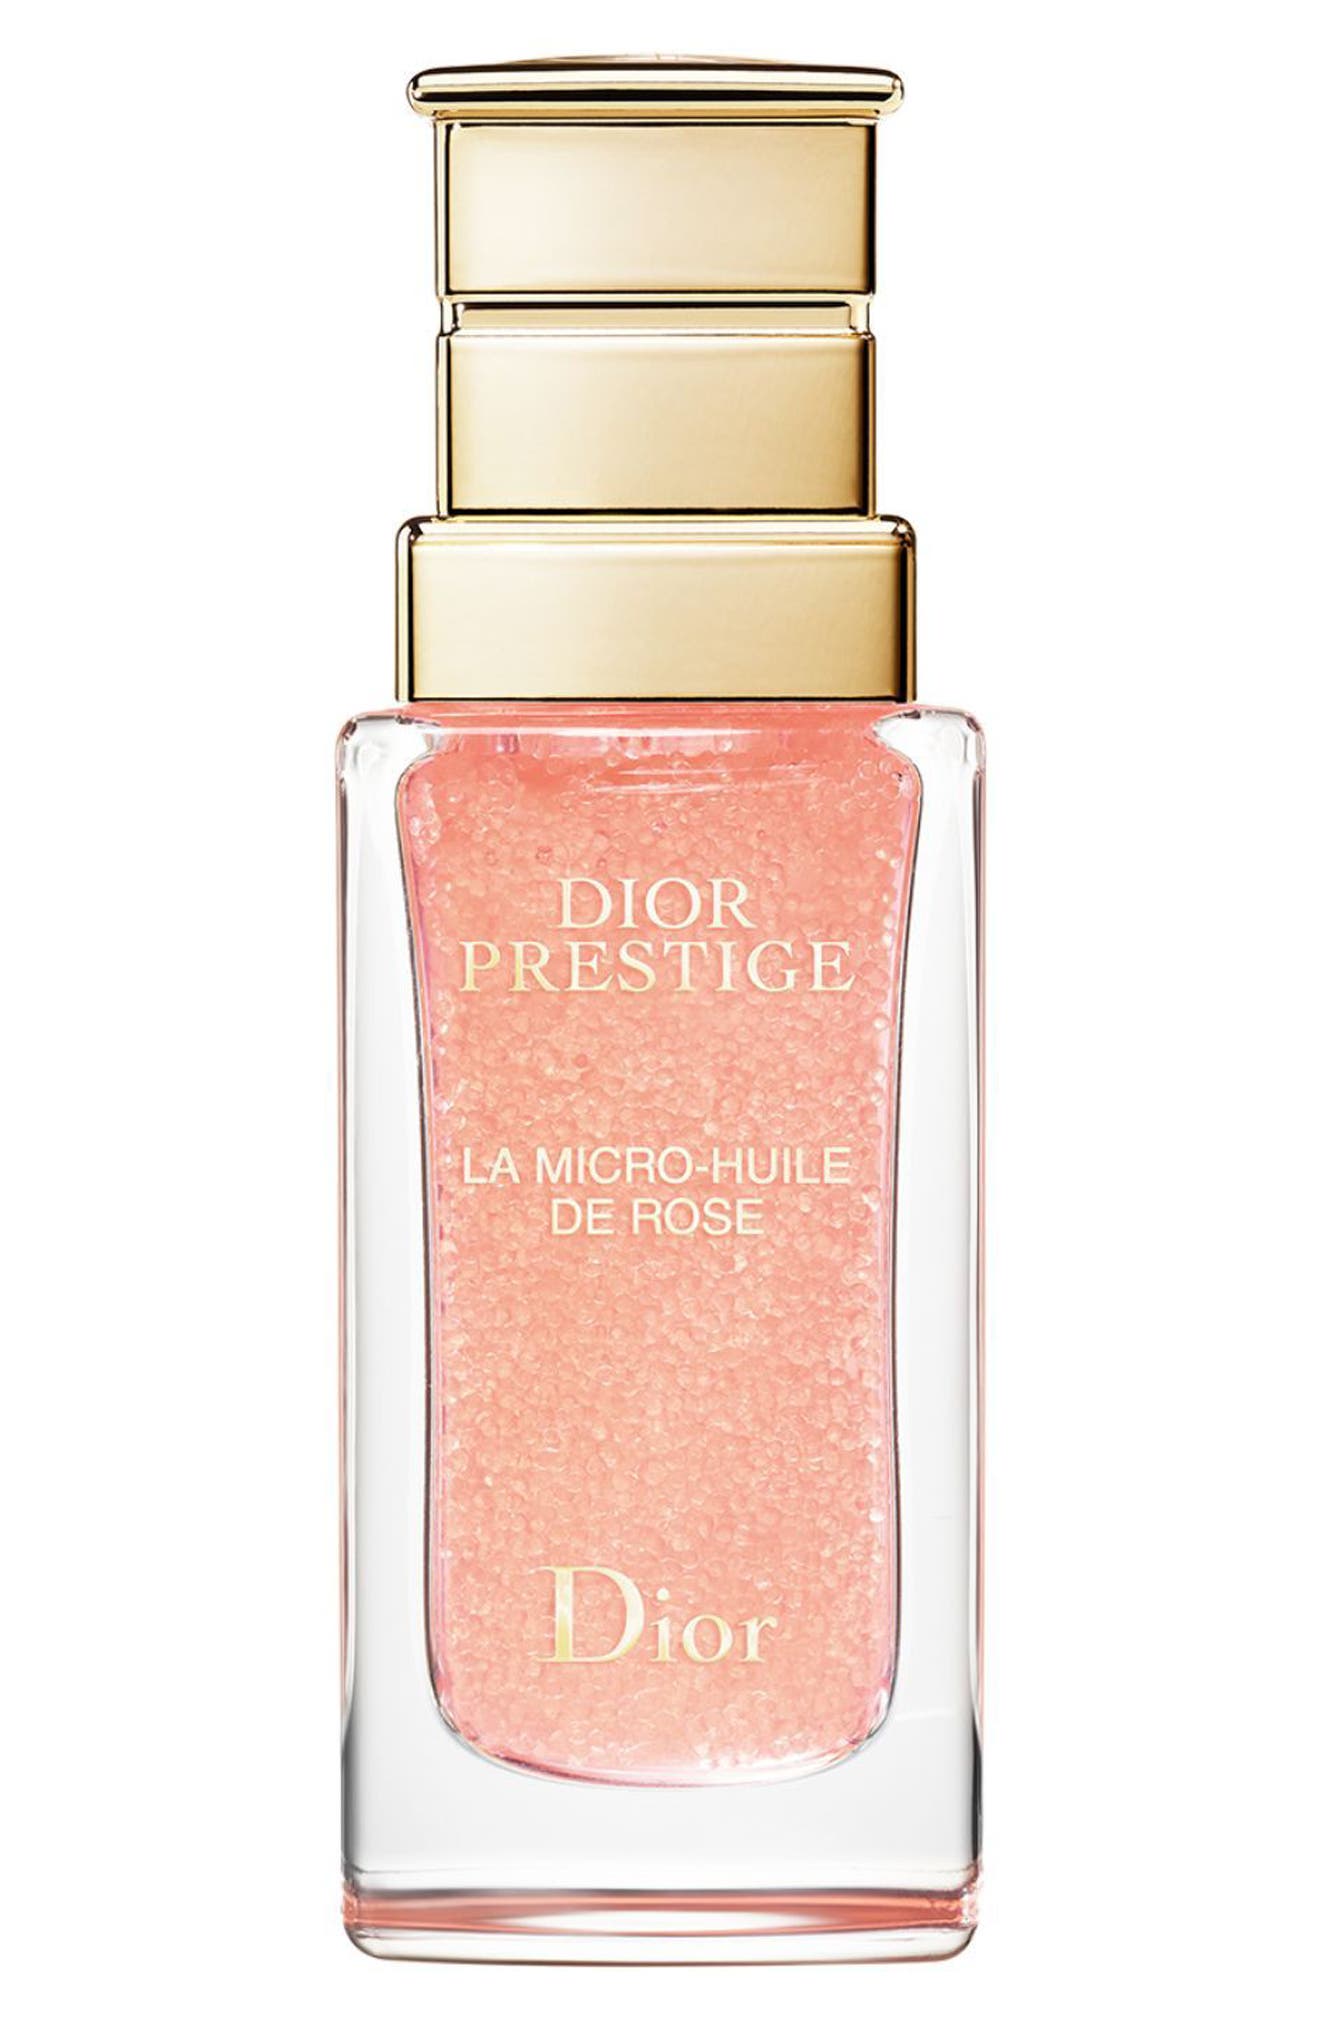 Dior Prestige Rose Micro-Oil | Nordstrom